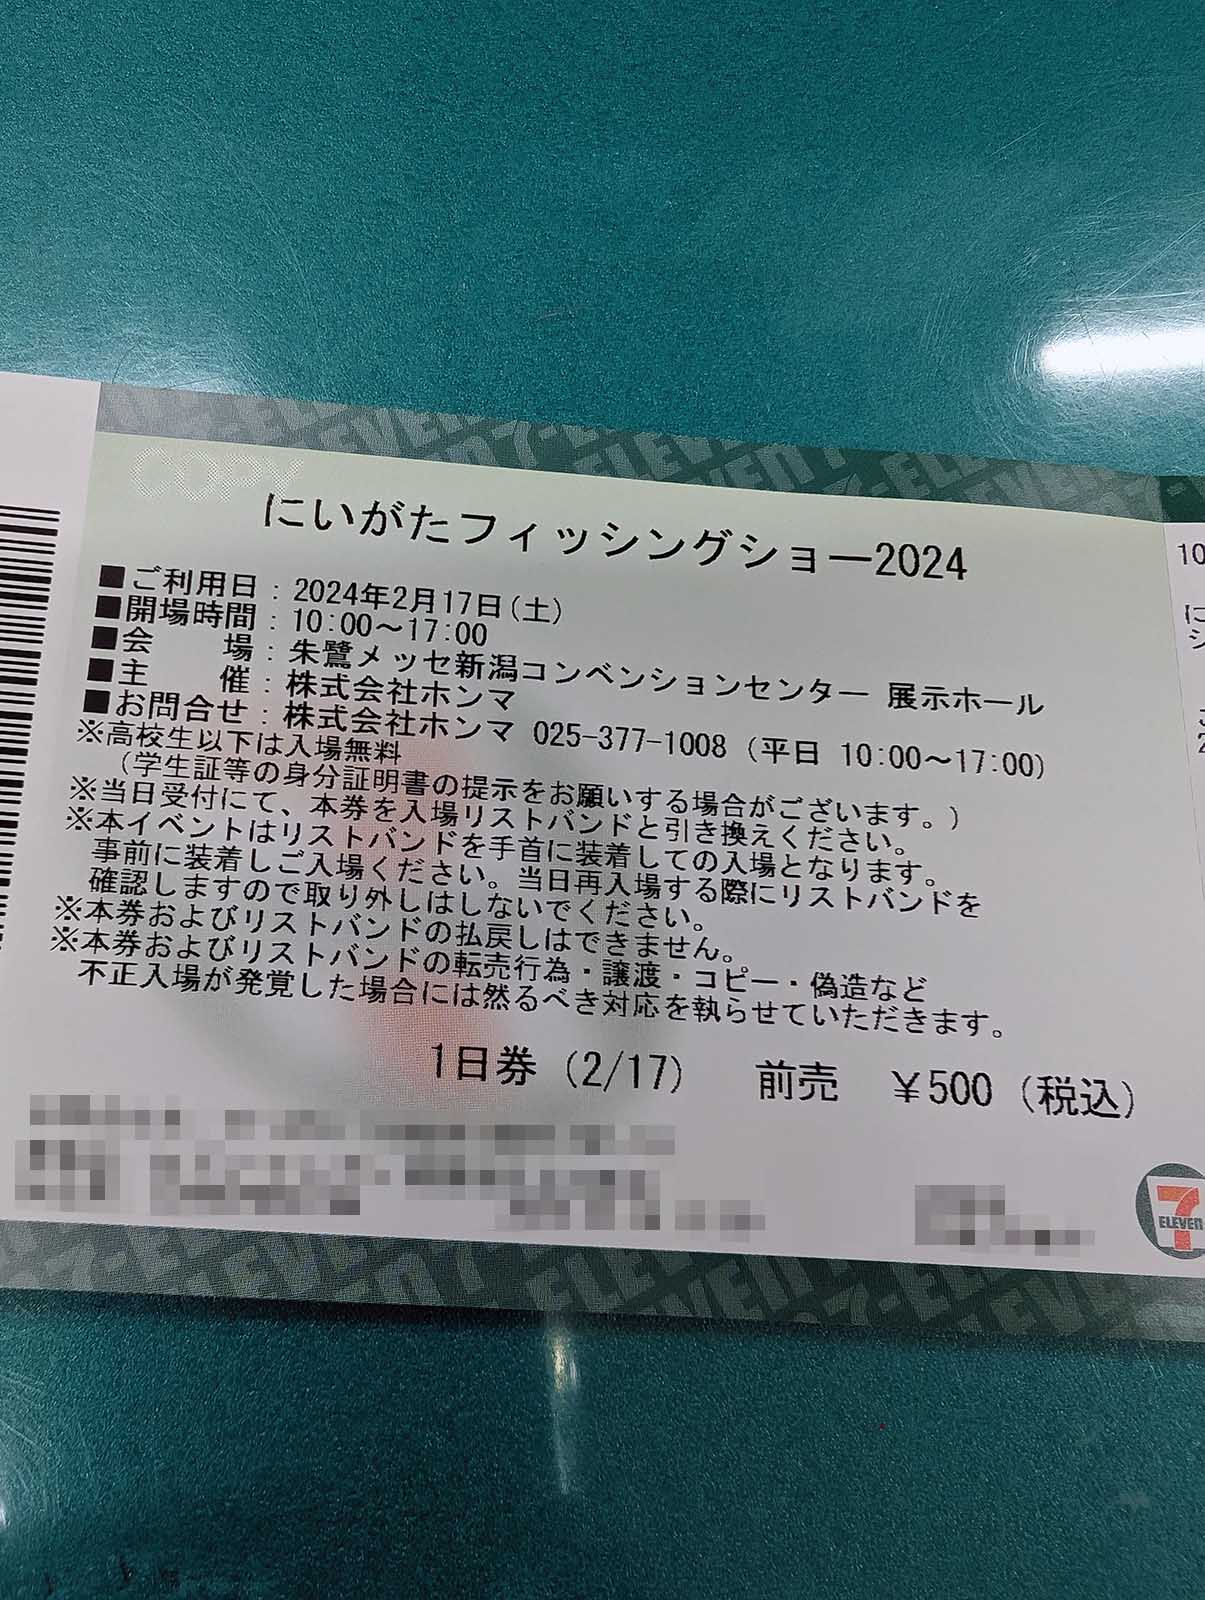 チケット発券